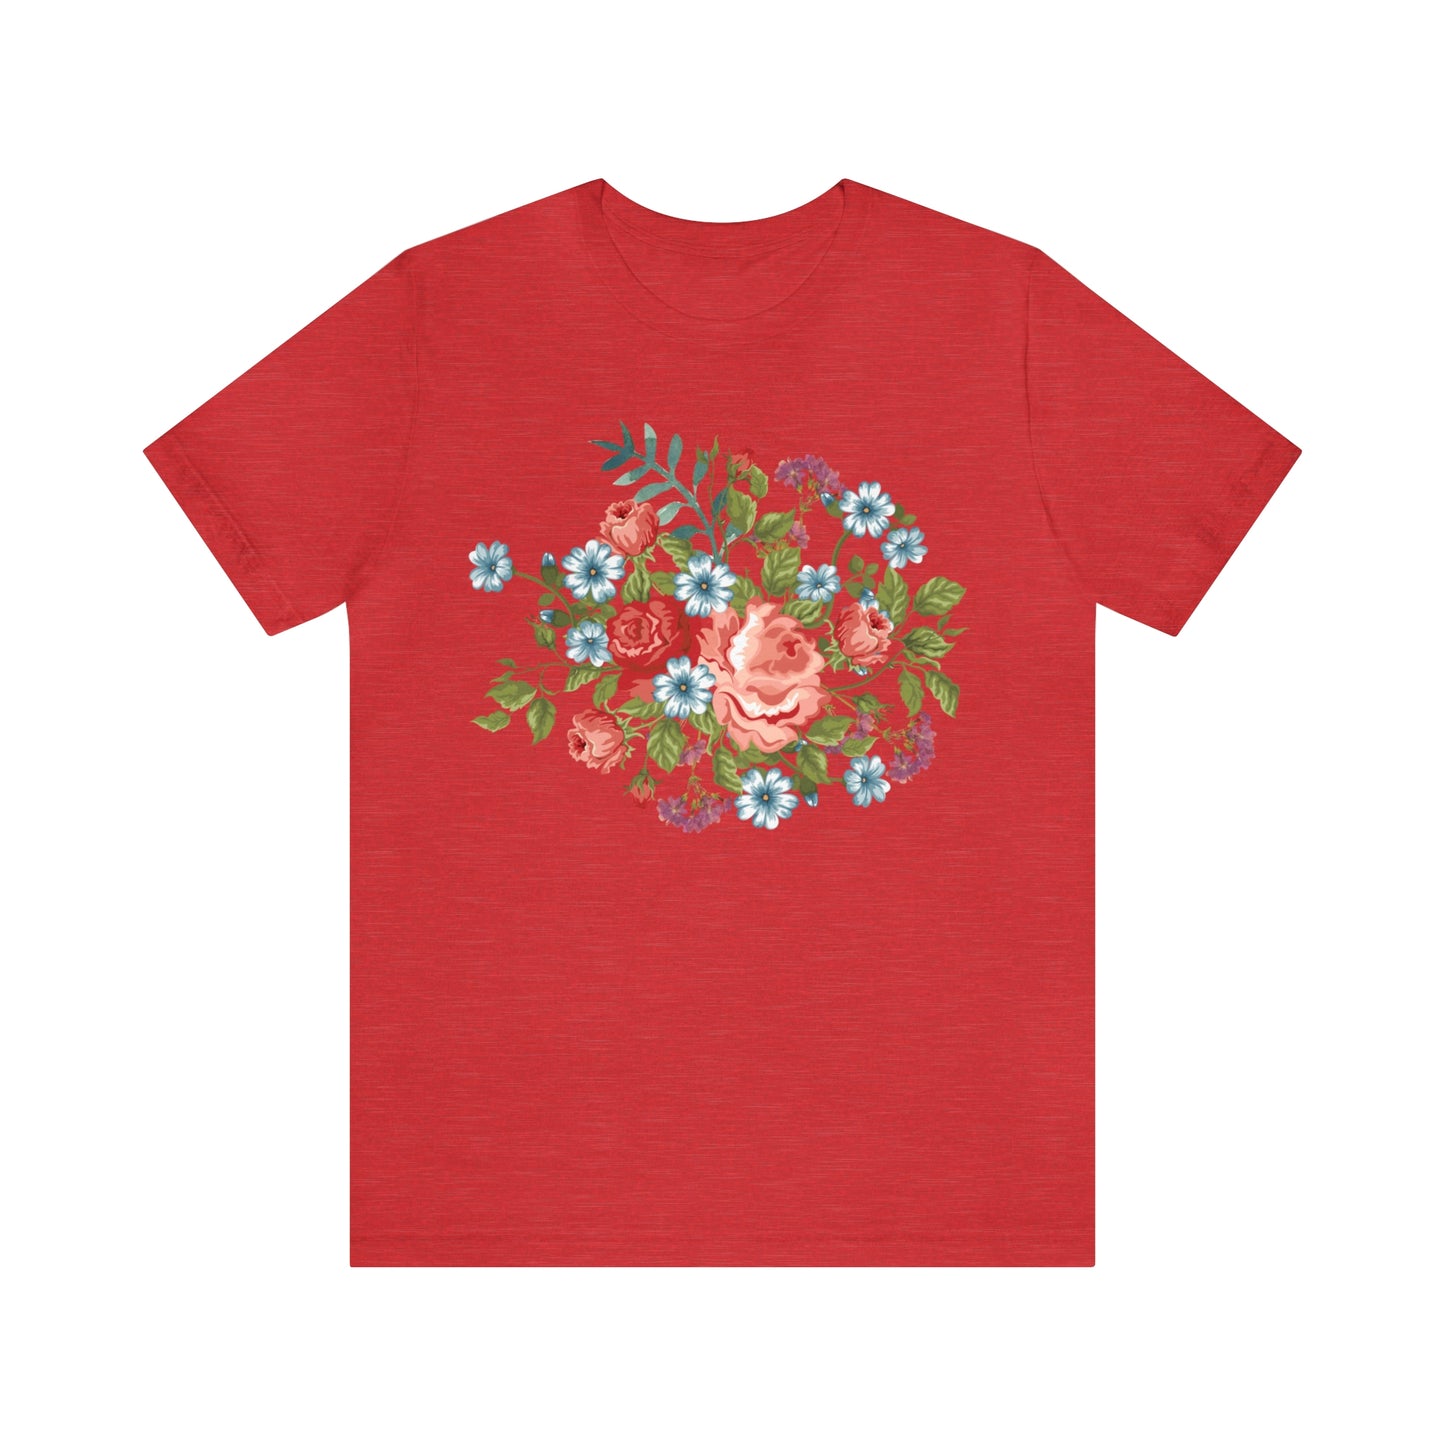 Flower Shirt, Botanical shirt, flower T shirt, floral shirt, wild flowers shirt, birth flower shirt, custom flower shirt, wildflowers shirt, plant lady shirt,  birth flower gift,